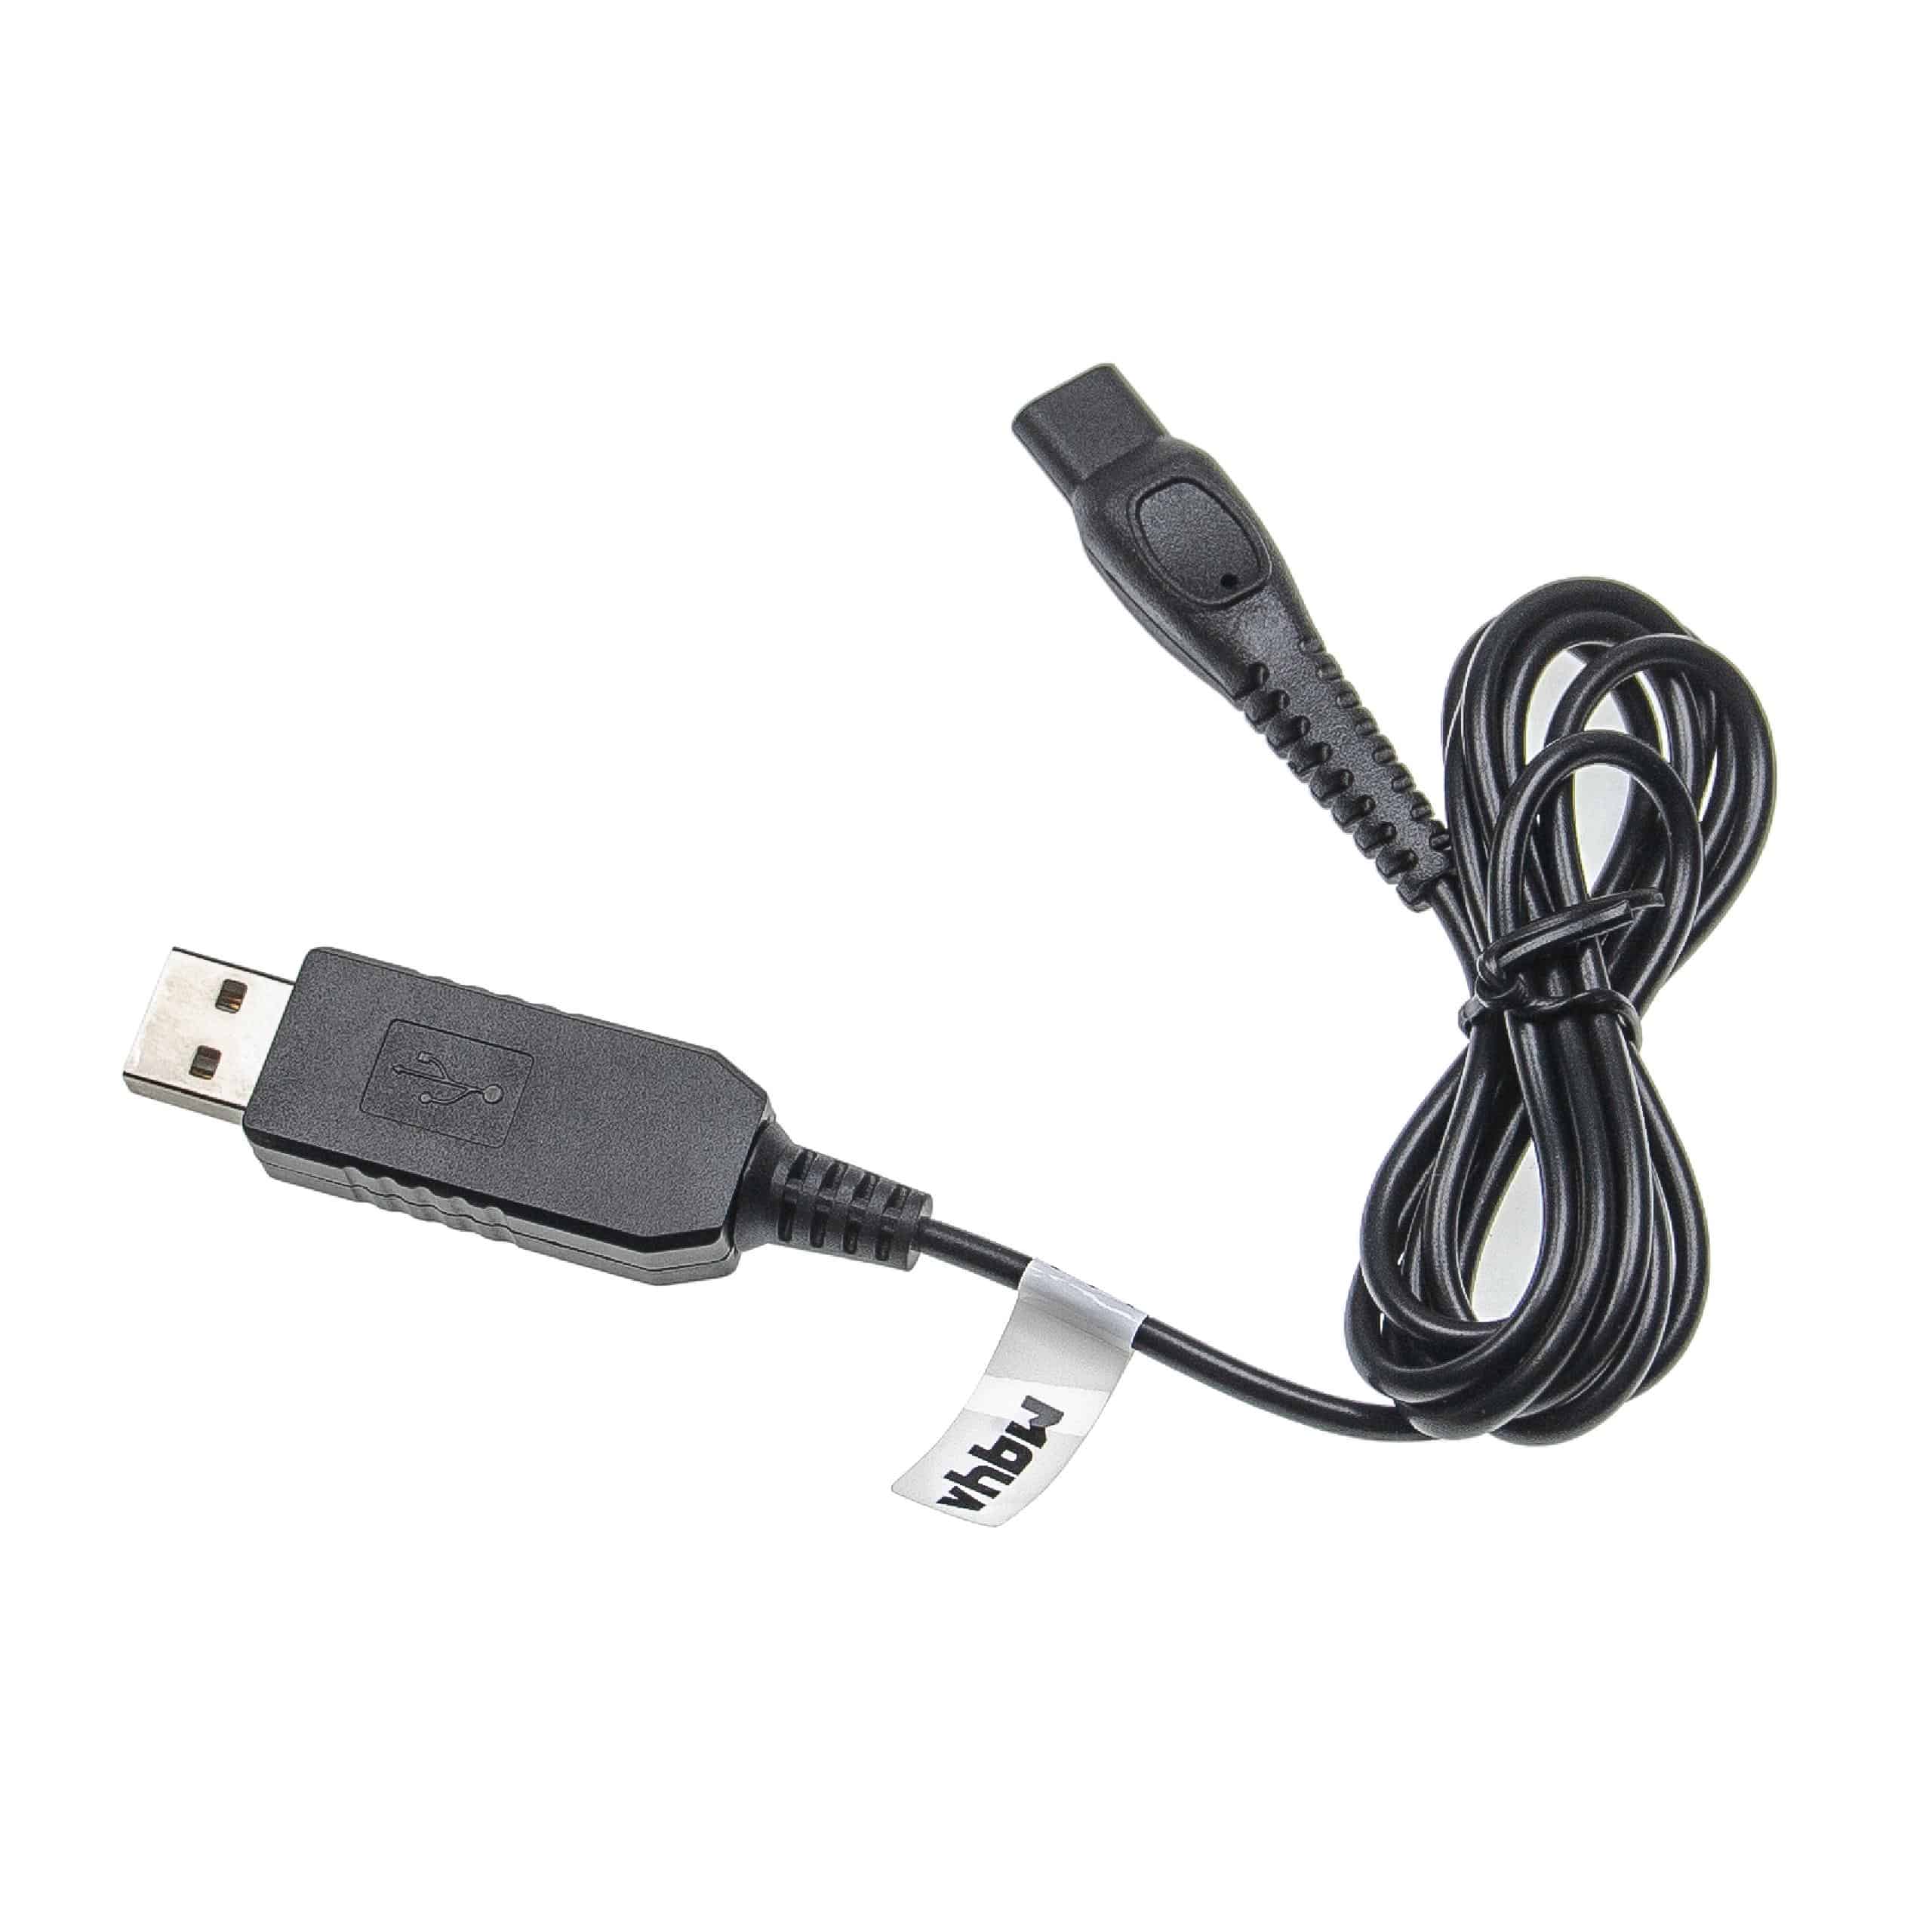 Kabel USB do ładowania golarki elektrycznej HS8020 Philips HS8020 - 100 cm